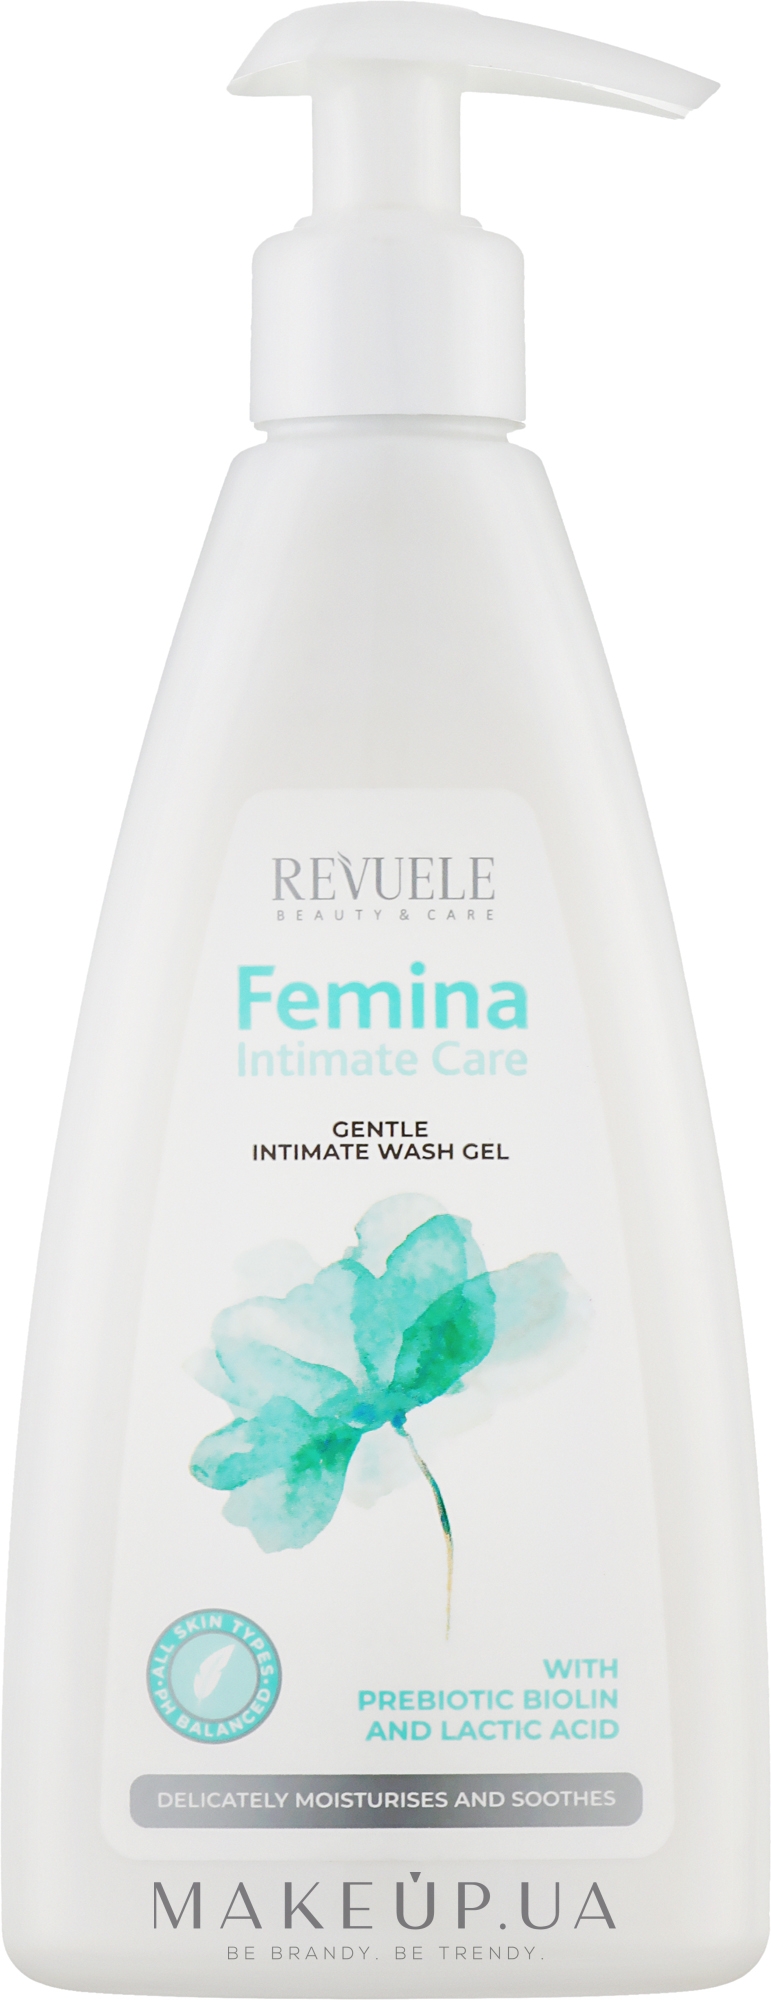 Нежный гель для интимной гигиены - Revuele Femina Intimate Care Gentle Intimate Wash Gel — фото 250ml